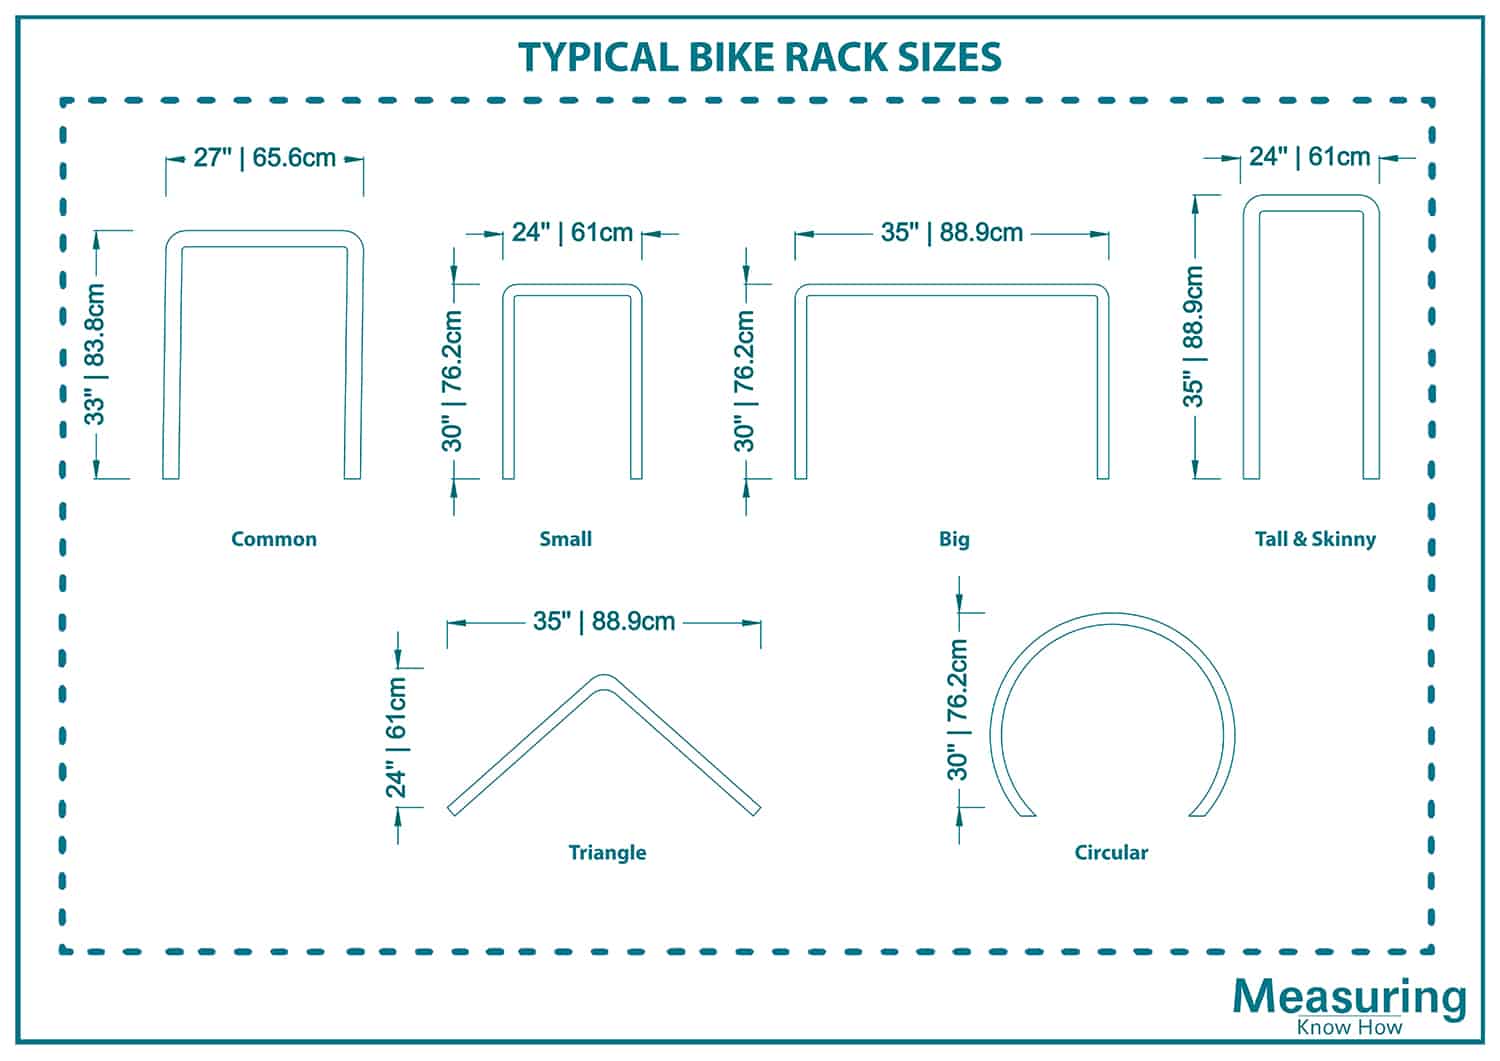 Typical bike rack sizes